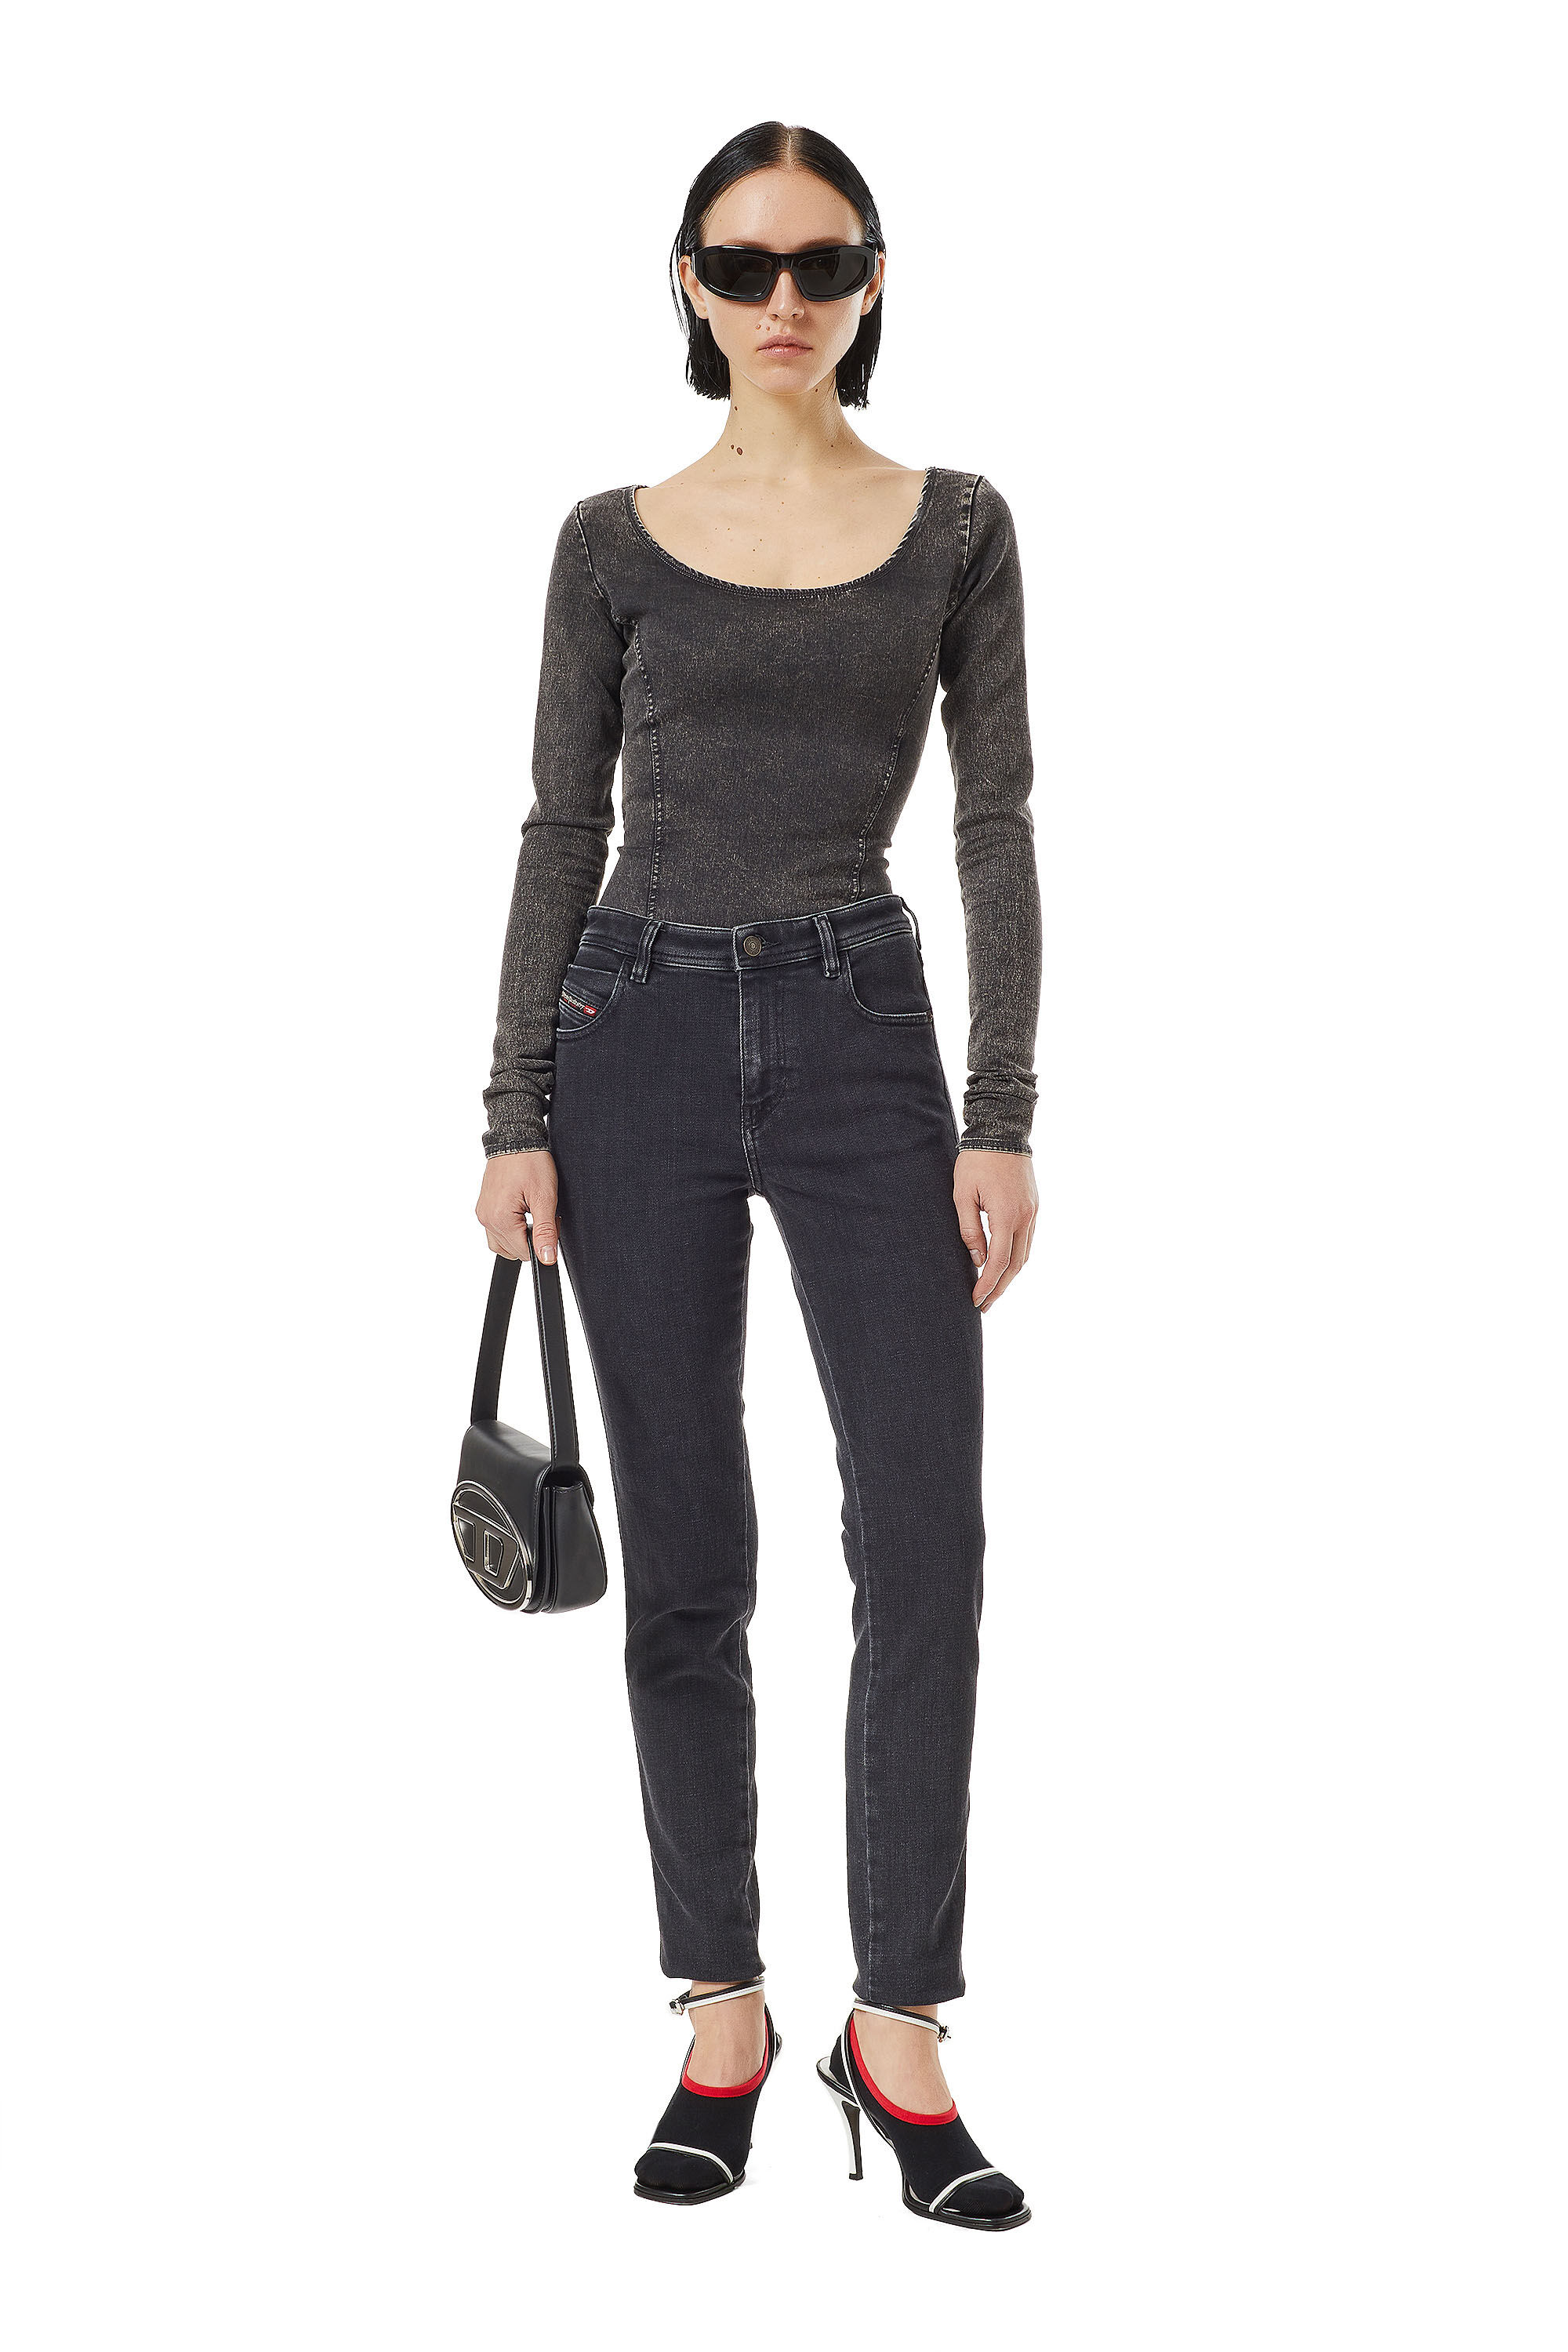 Diesel - Skinny Jeans 2015 Babhila Z870G, Mujer Skinny Jeans - 2015 Babhila in Negro - Image 1